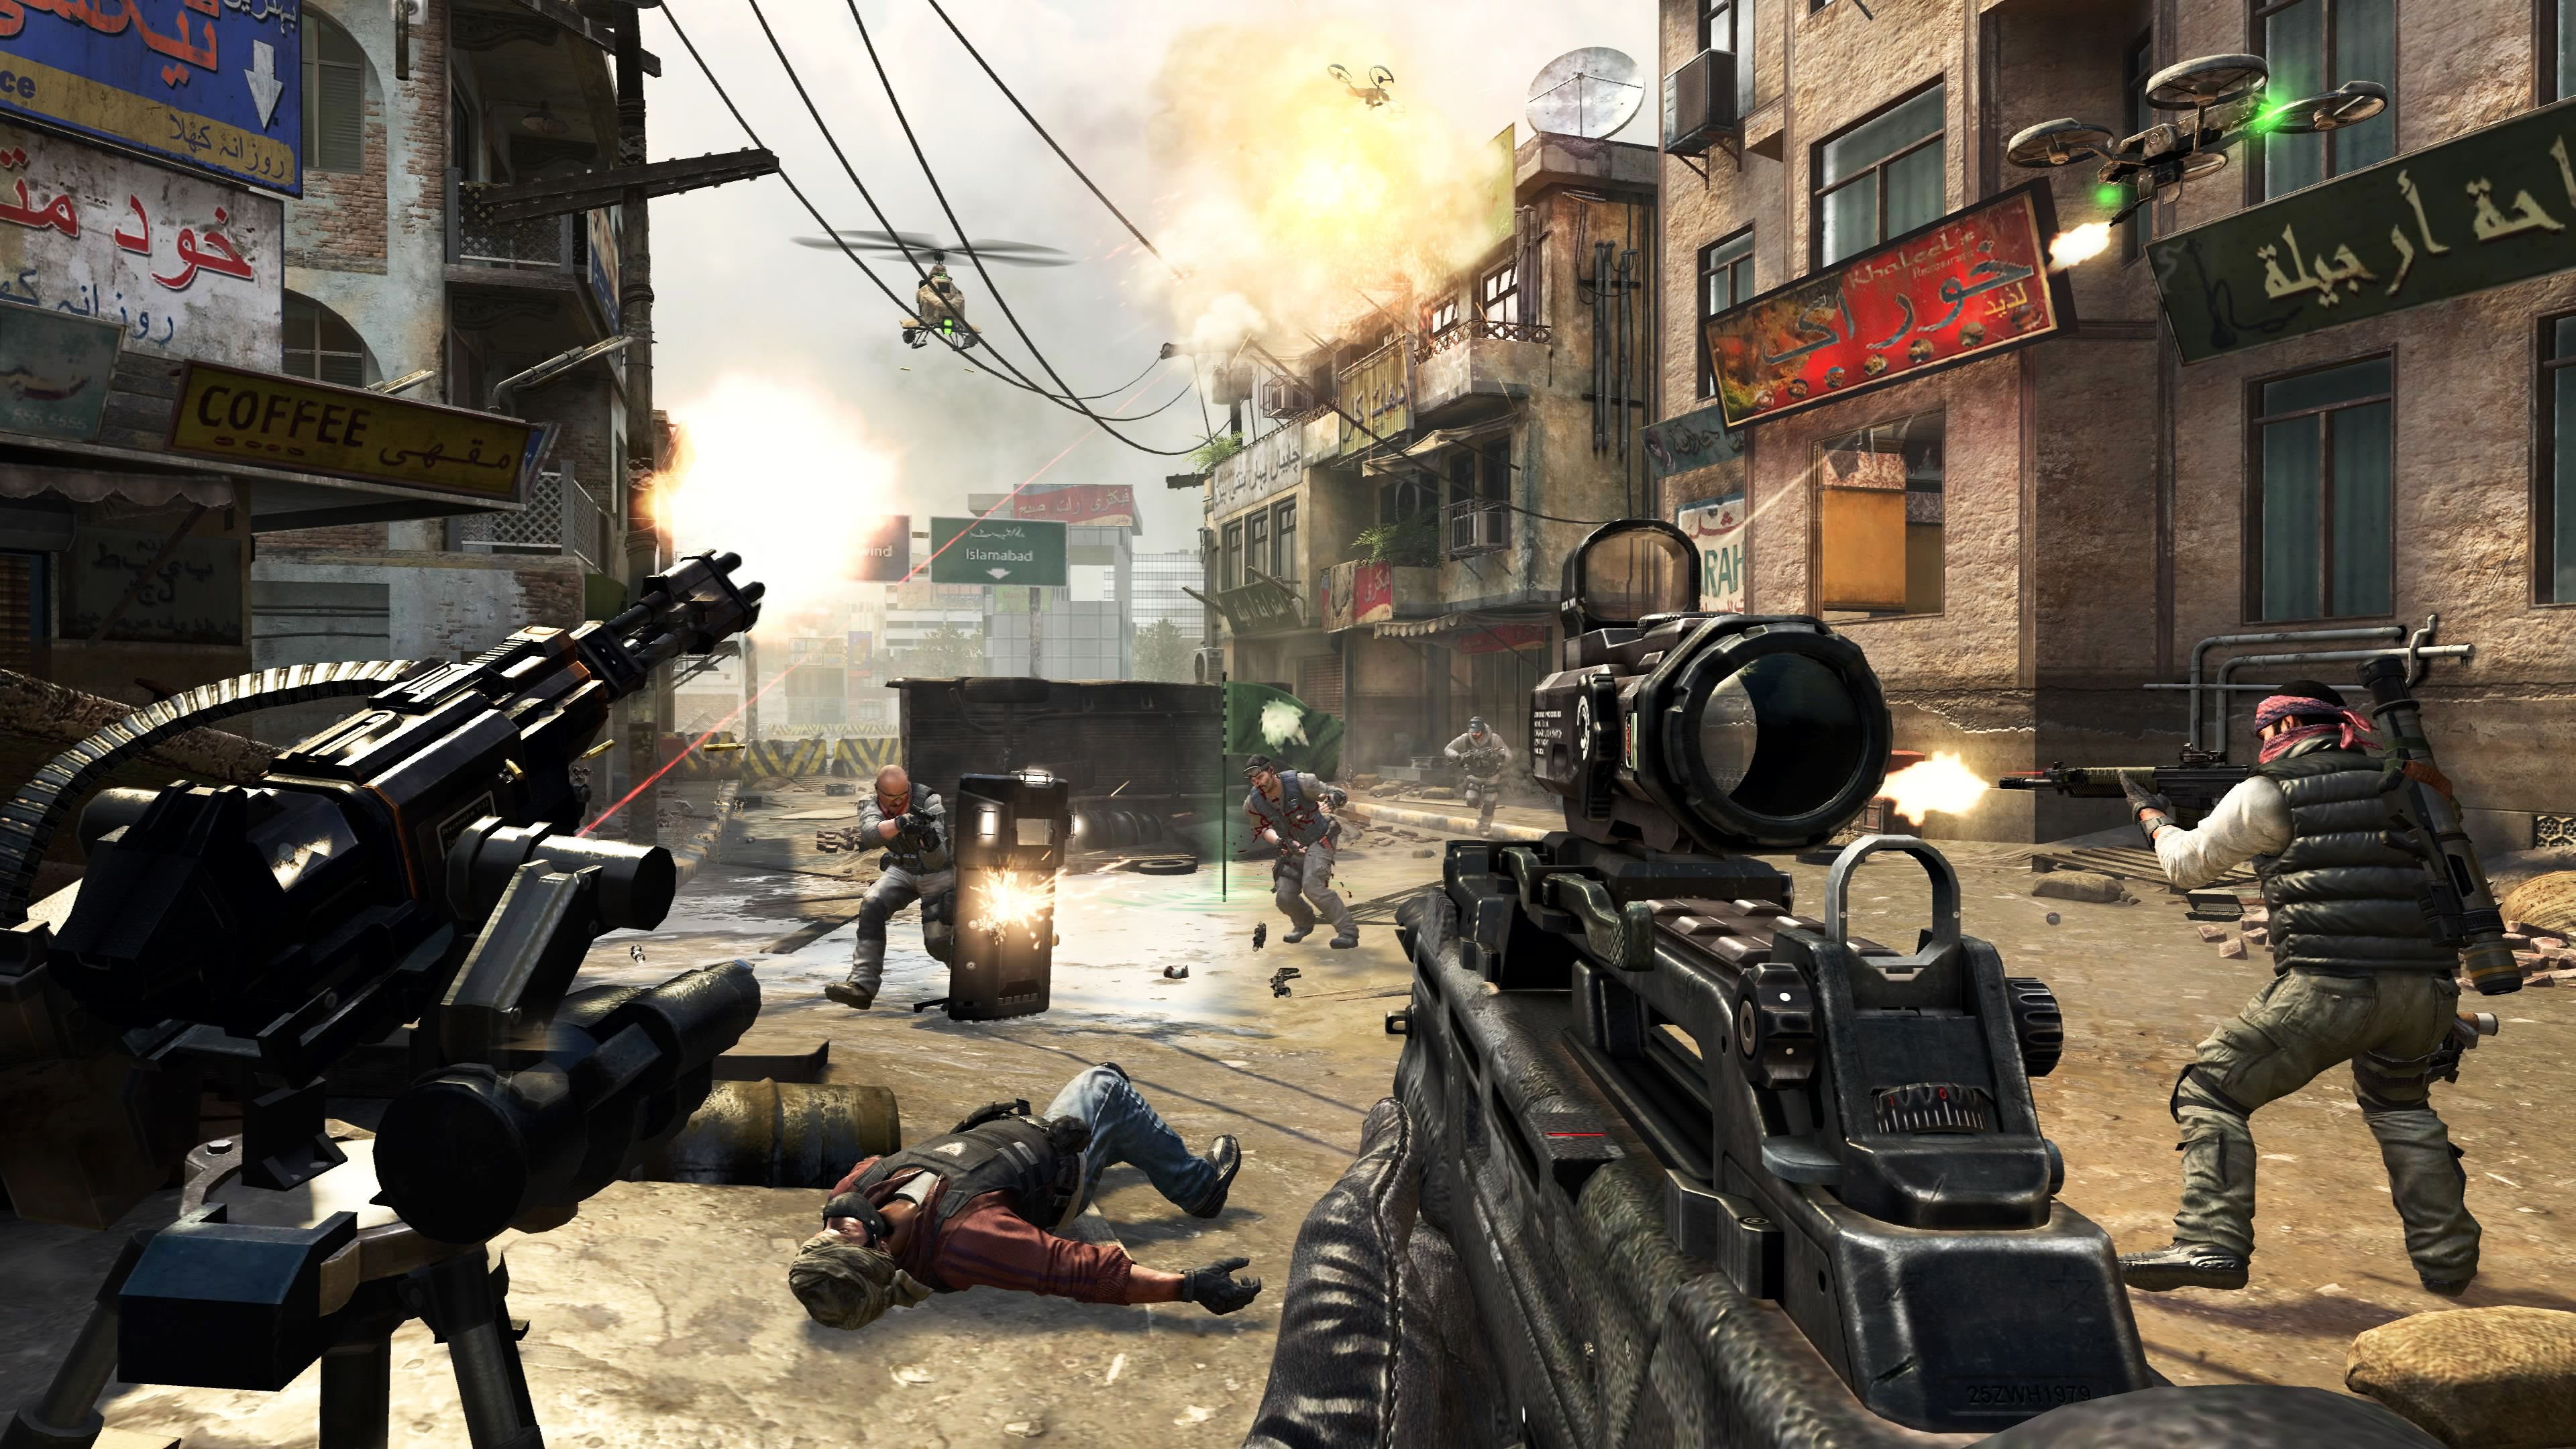 Korting Inademen Schandelijk Black Ops 2' server issues on PS3